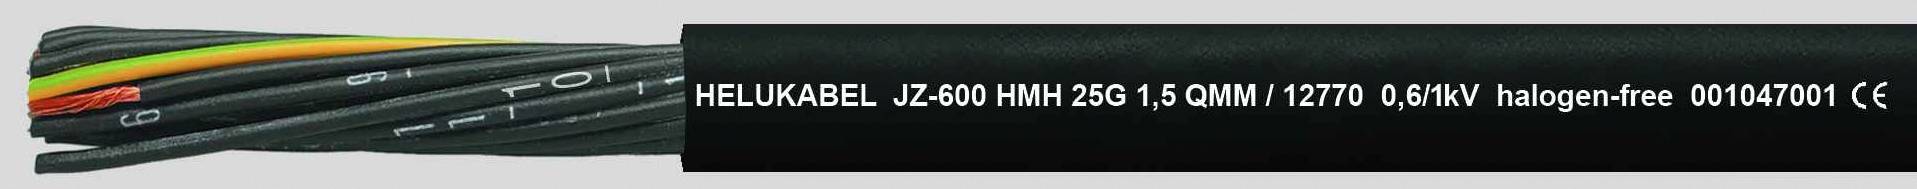 HELUKABEL JZ-600 HMH Steuerleitung 5 G 2.50 mm² Schwarz 12776-500 500 m